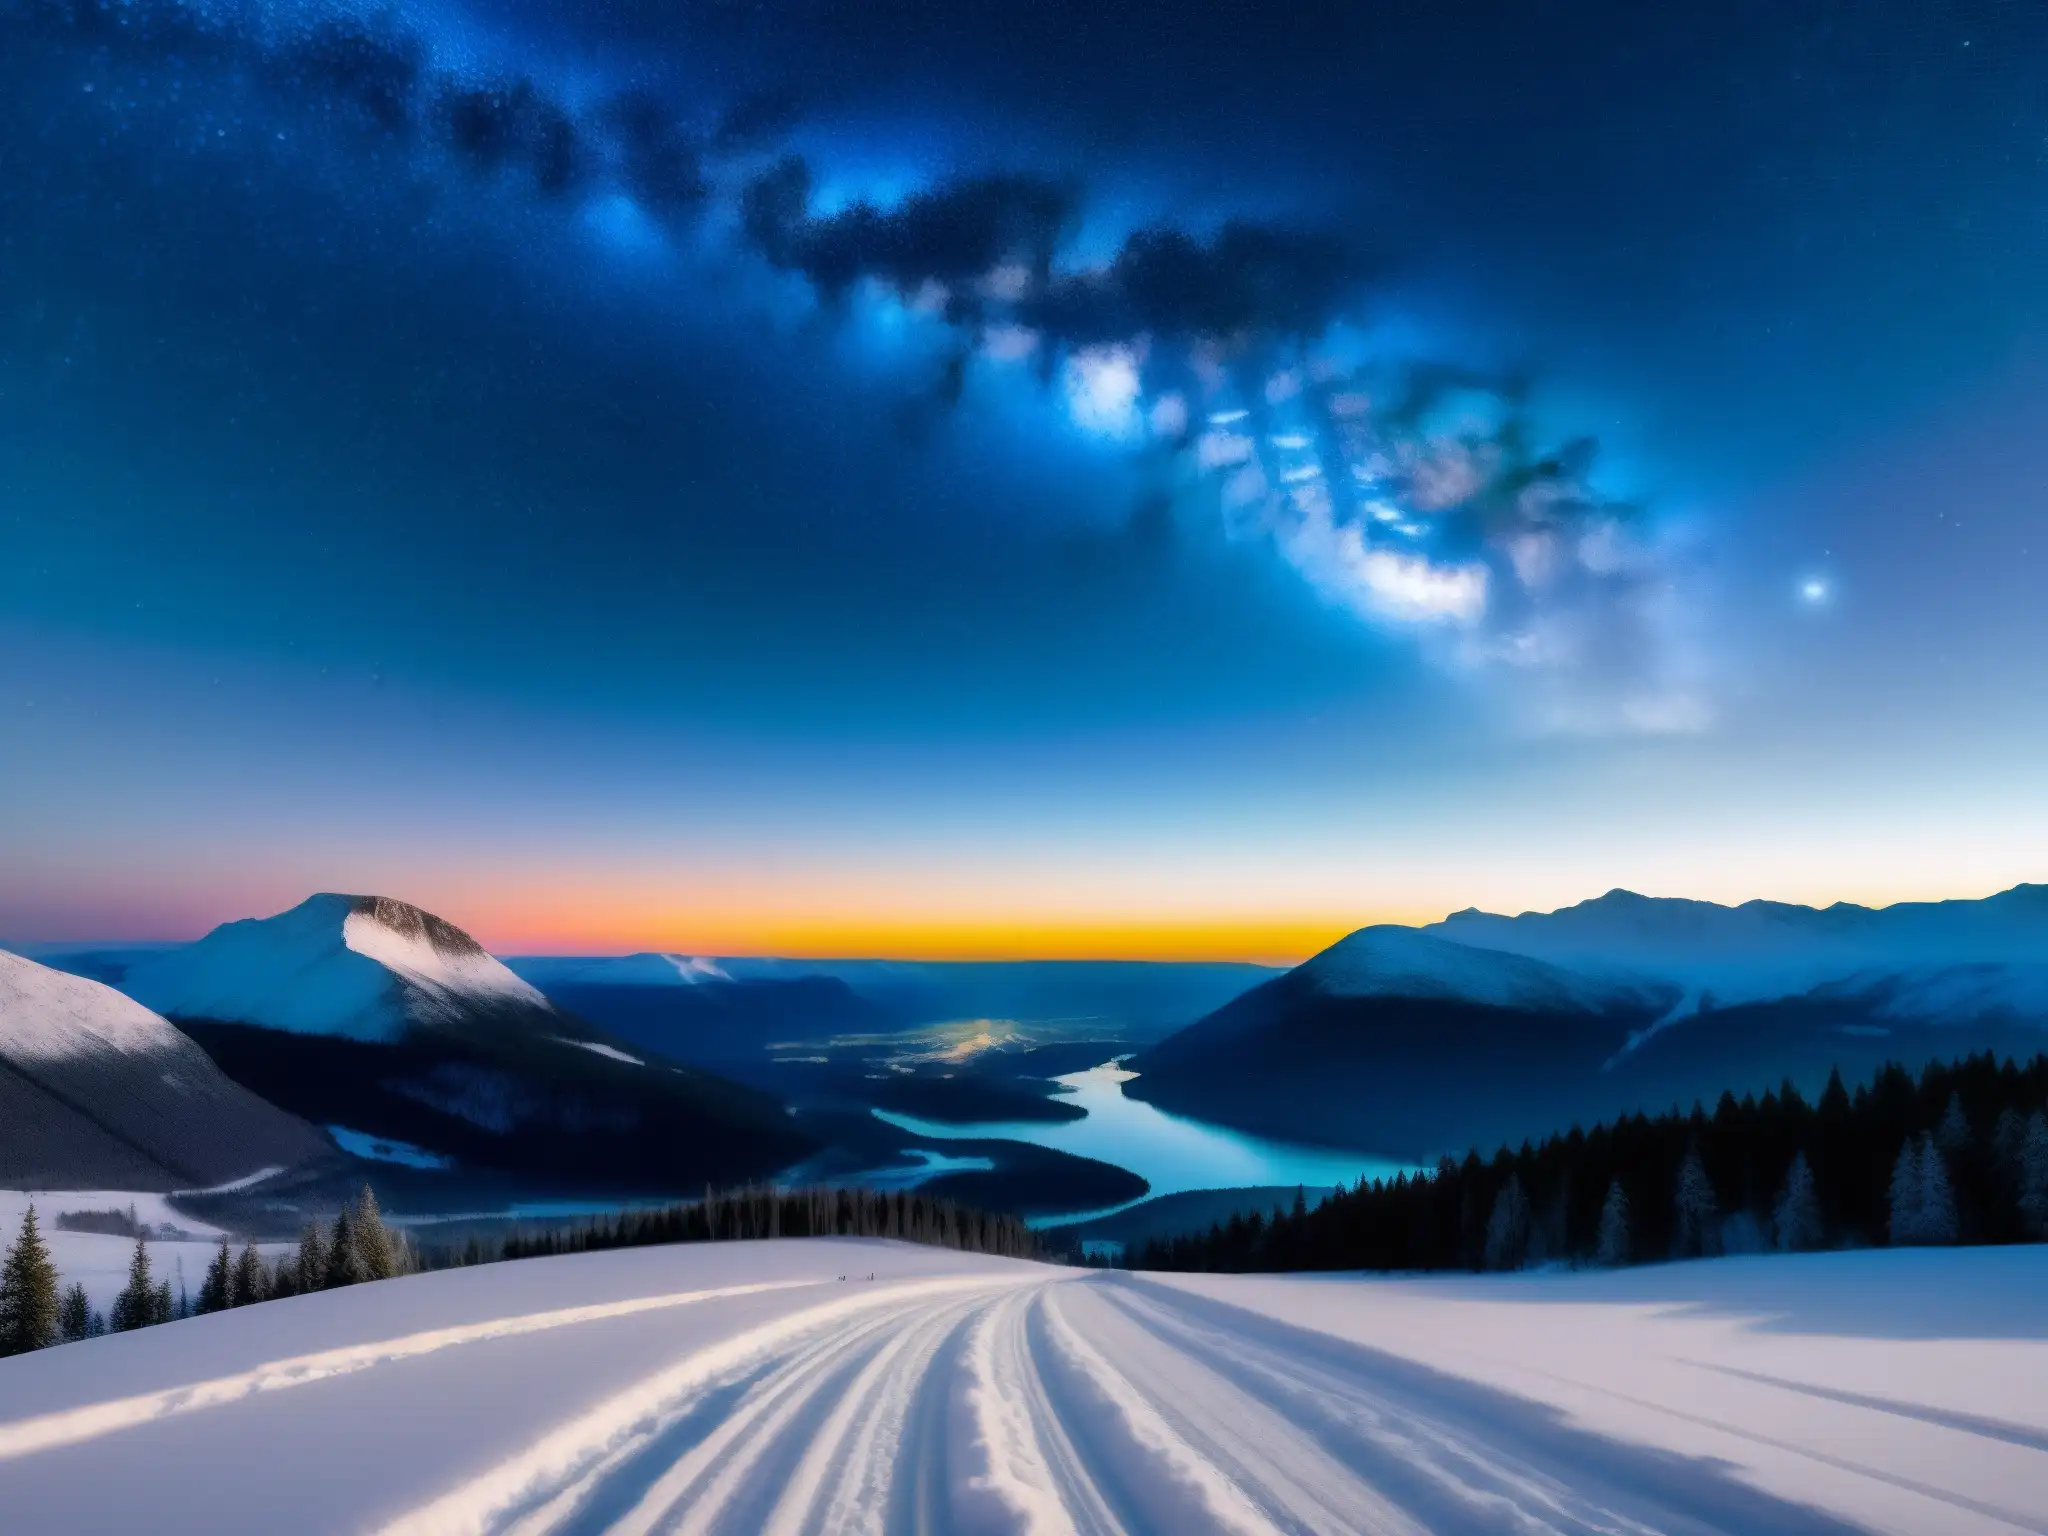 Deslumbrante foto del fenómeno luces Hessdalen Canadá, con misteriosas luces danzantes en el cielo nocturno